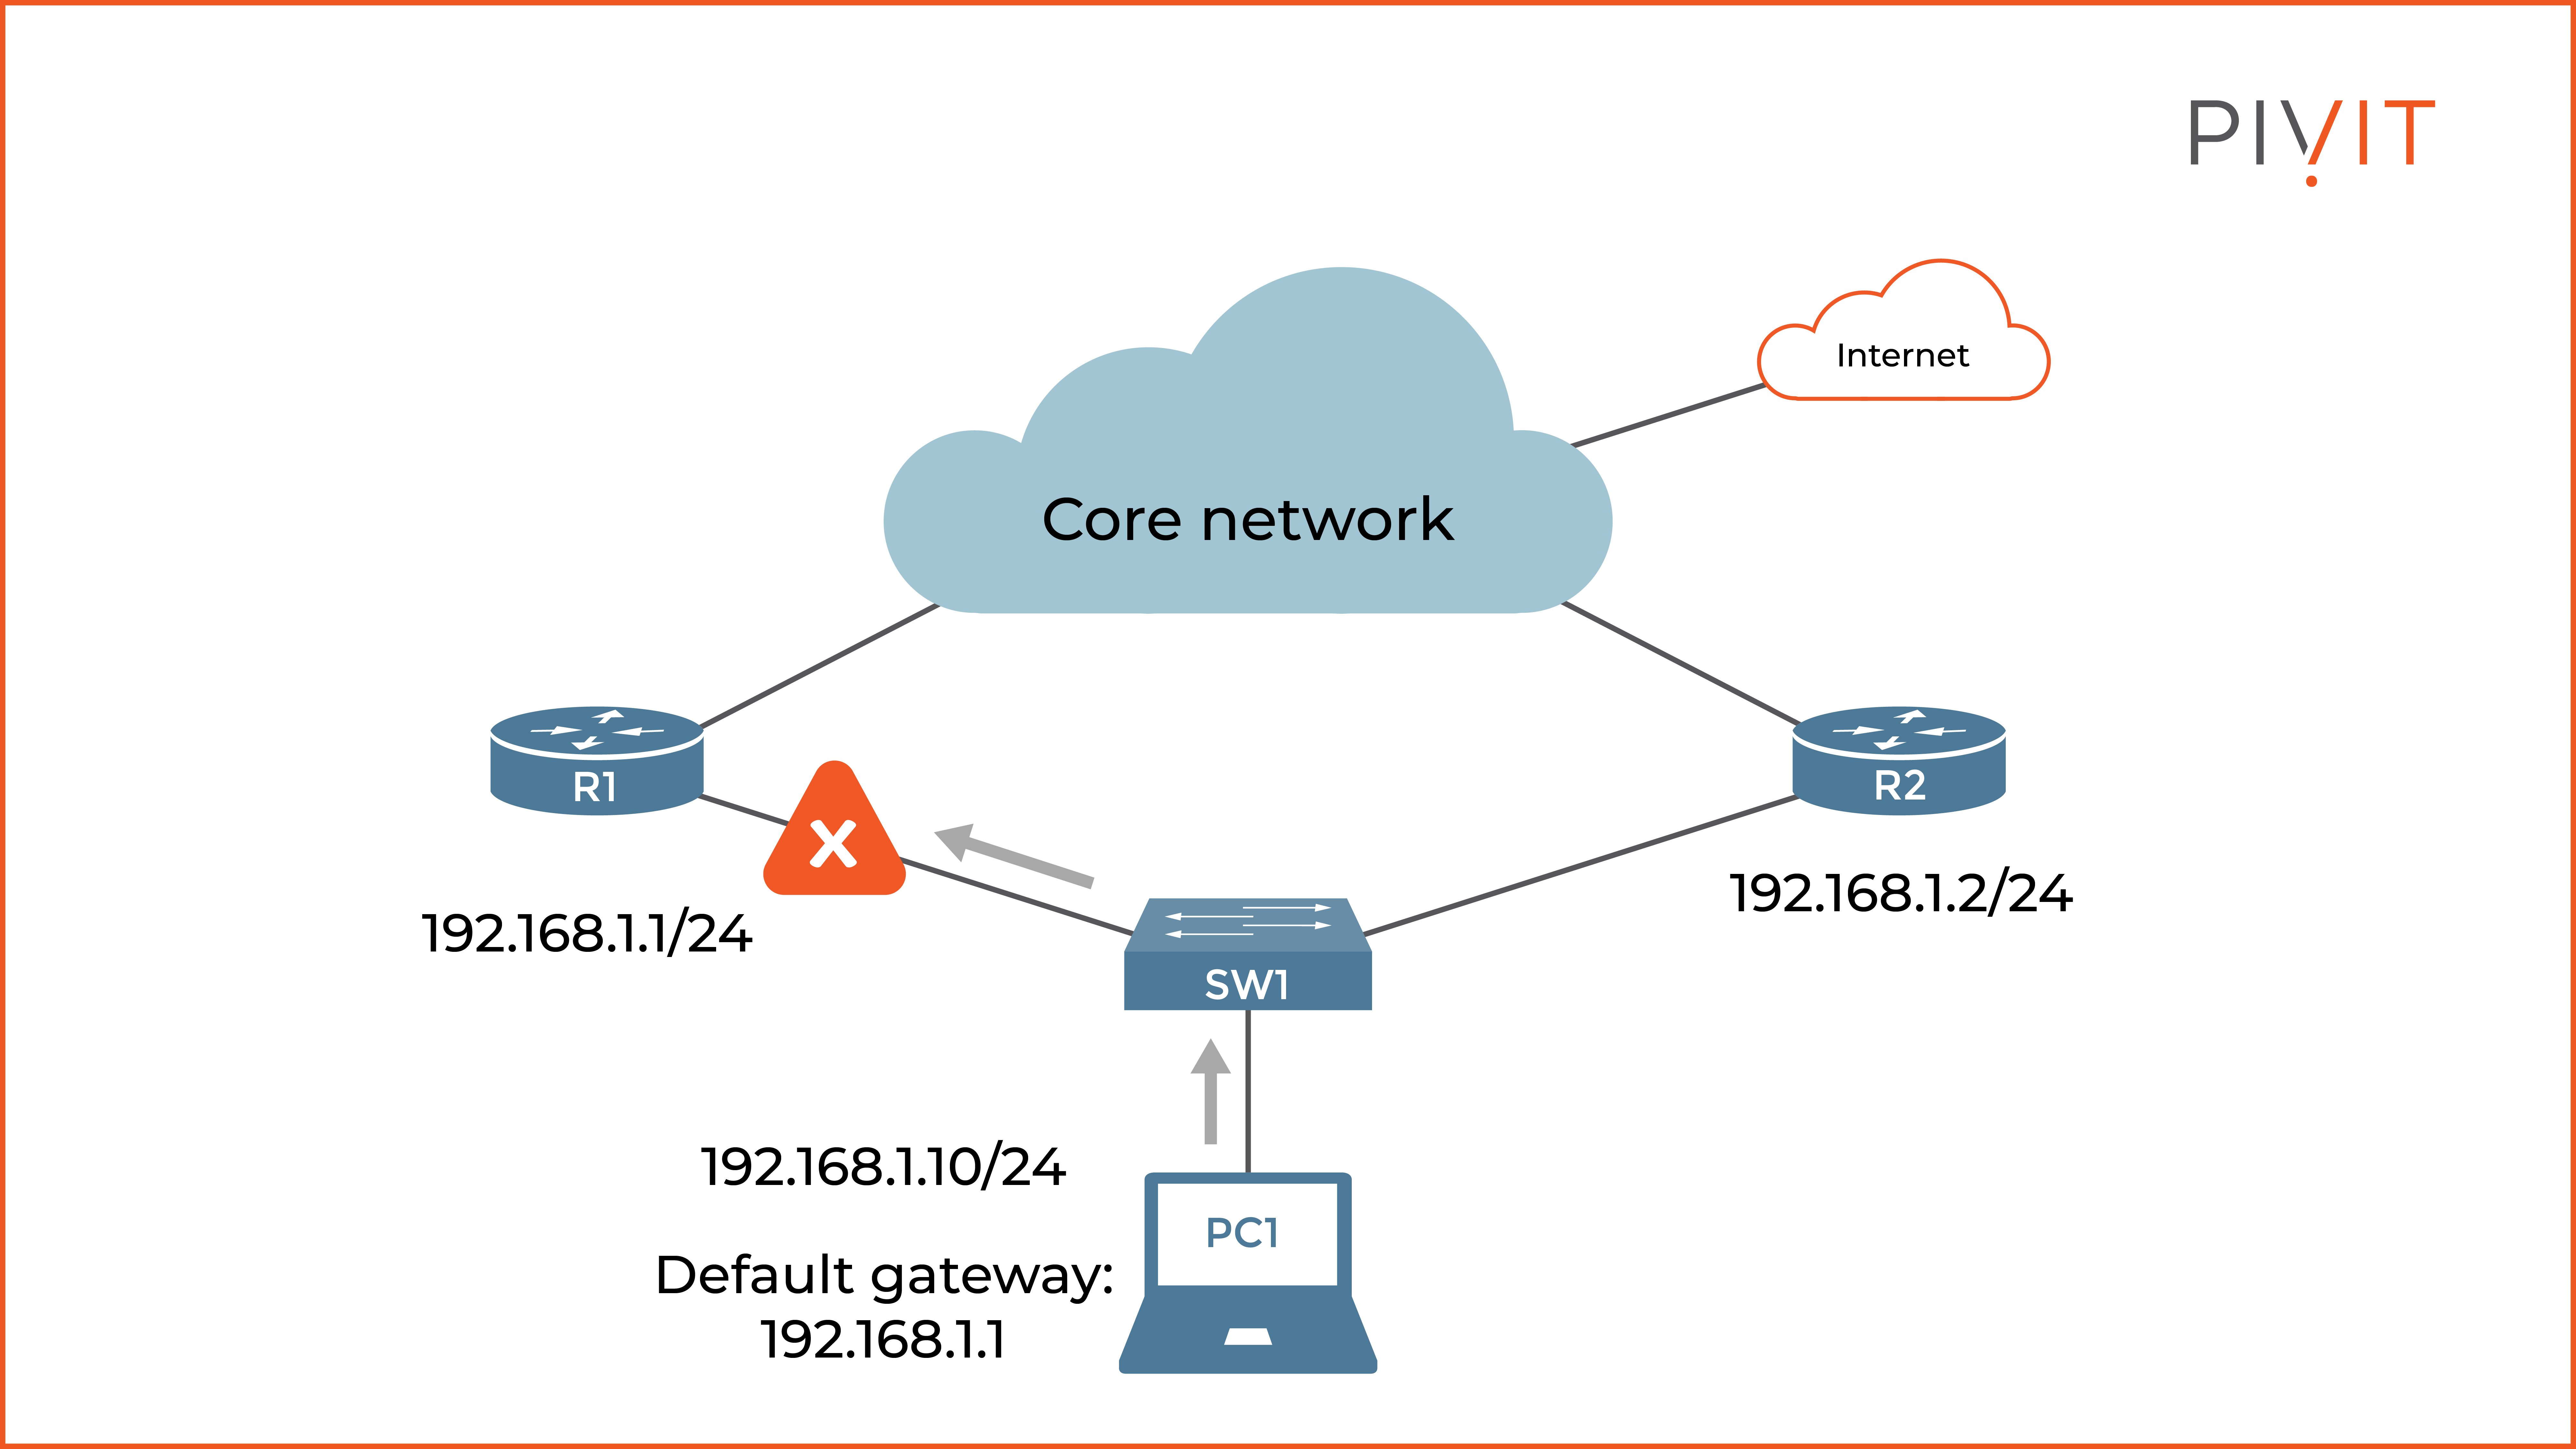 The default network behavior when the default gateway configured on the PC fails